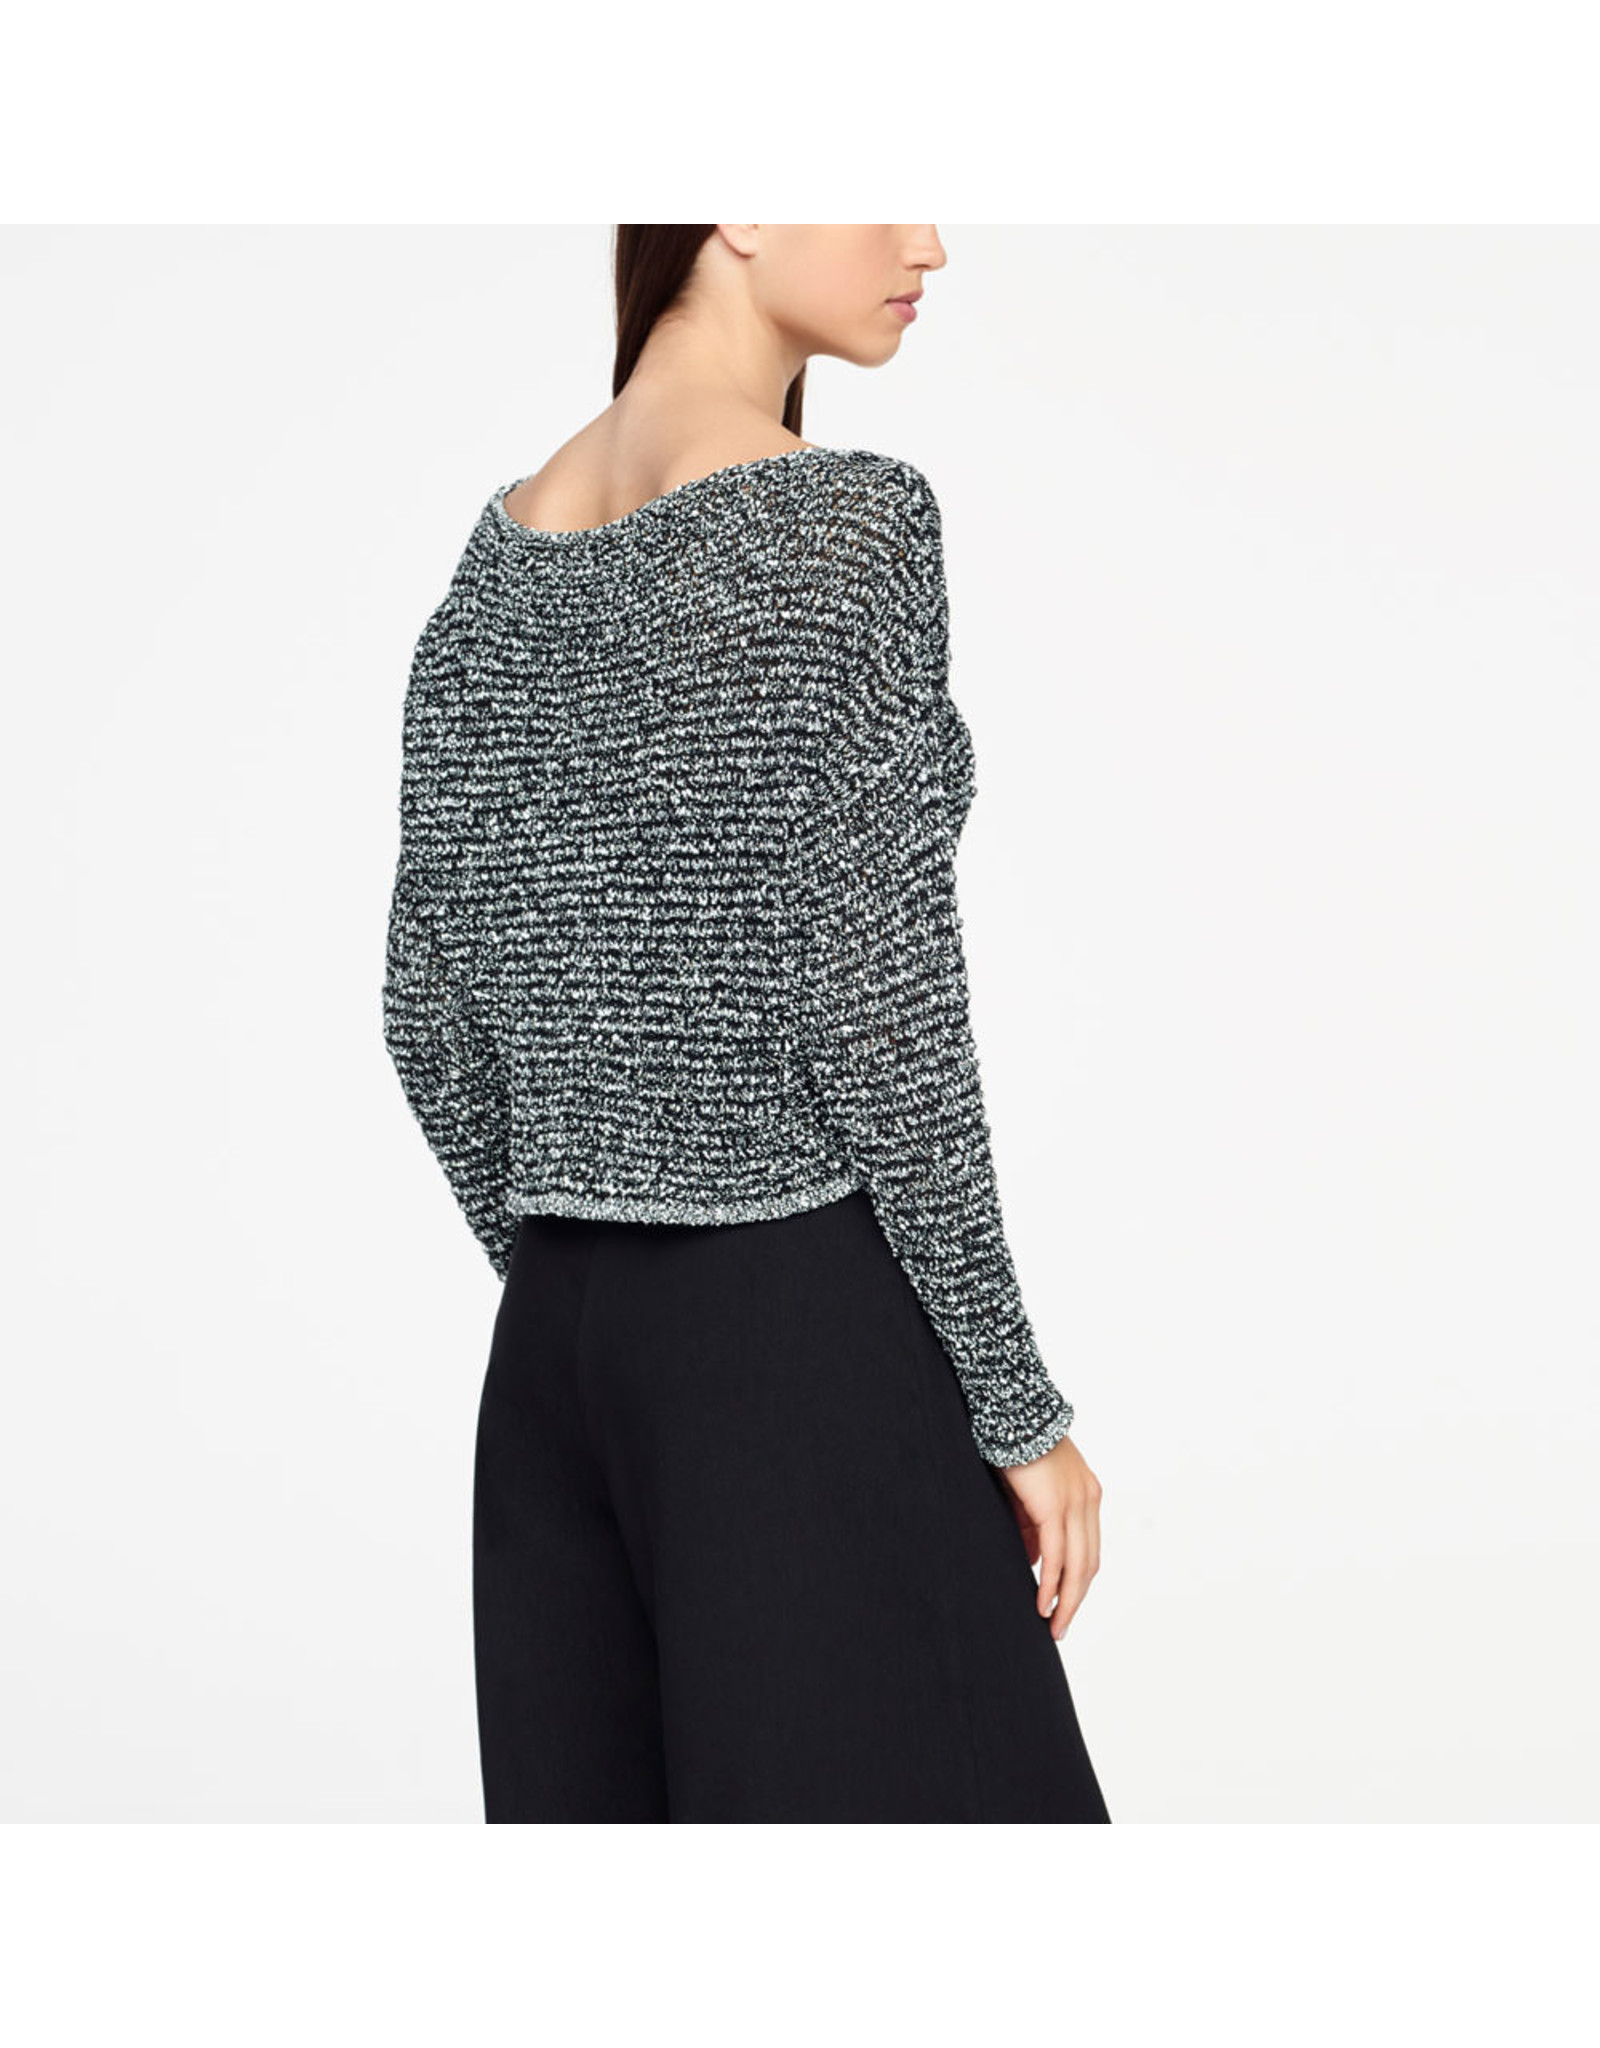 Sarah Pacini Sarah Pacini Sweater, One Size